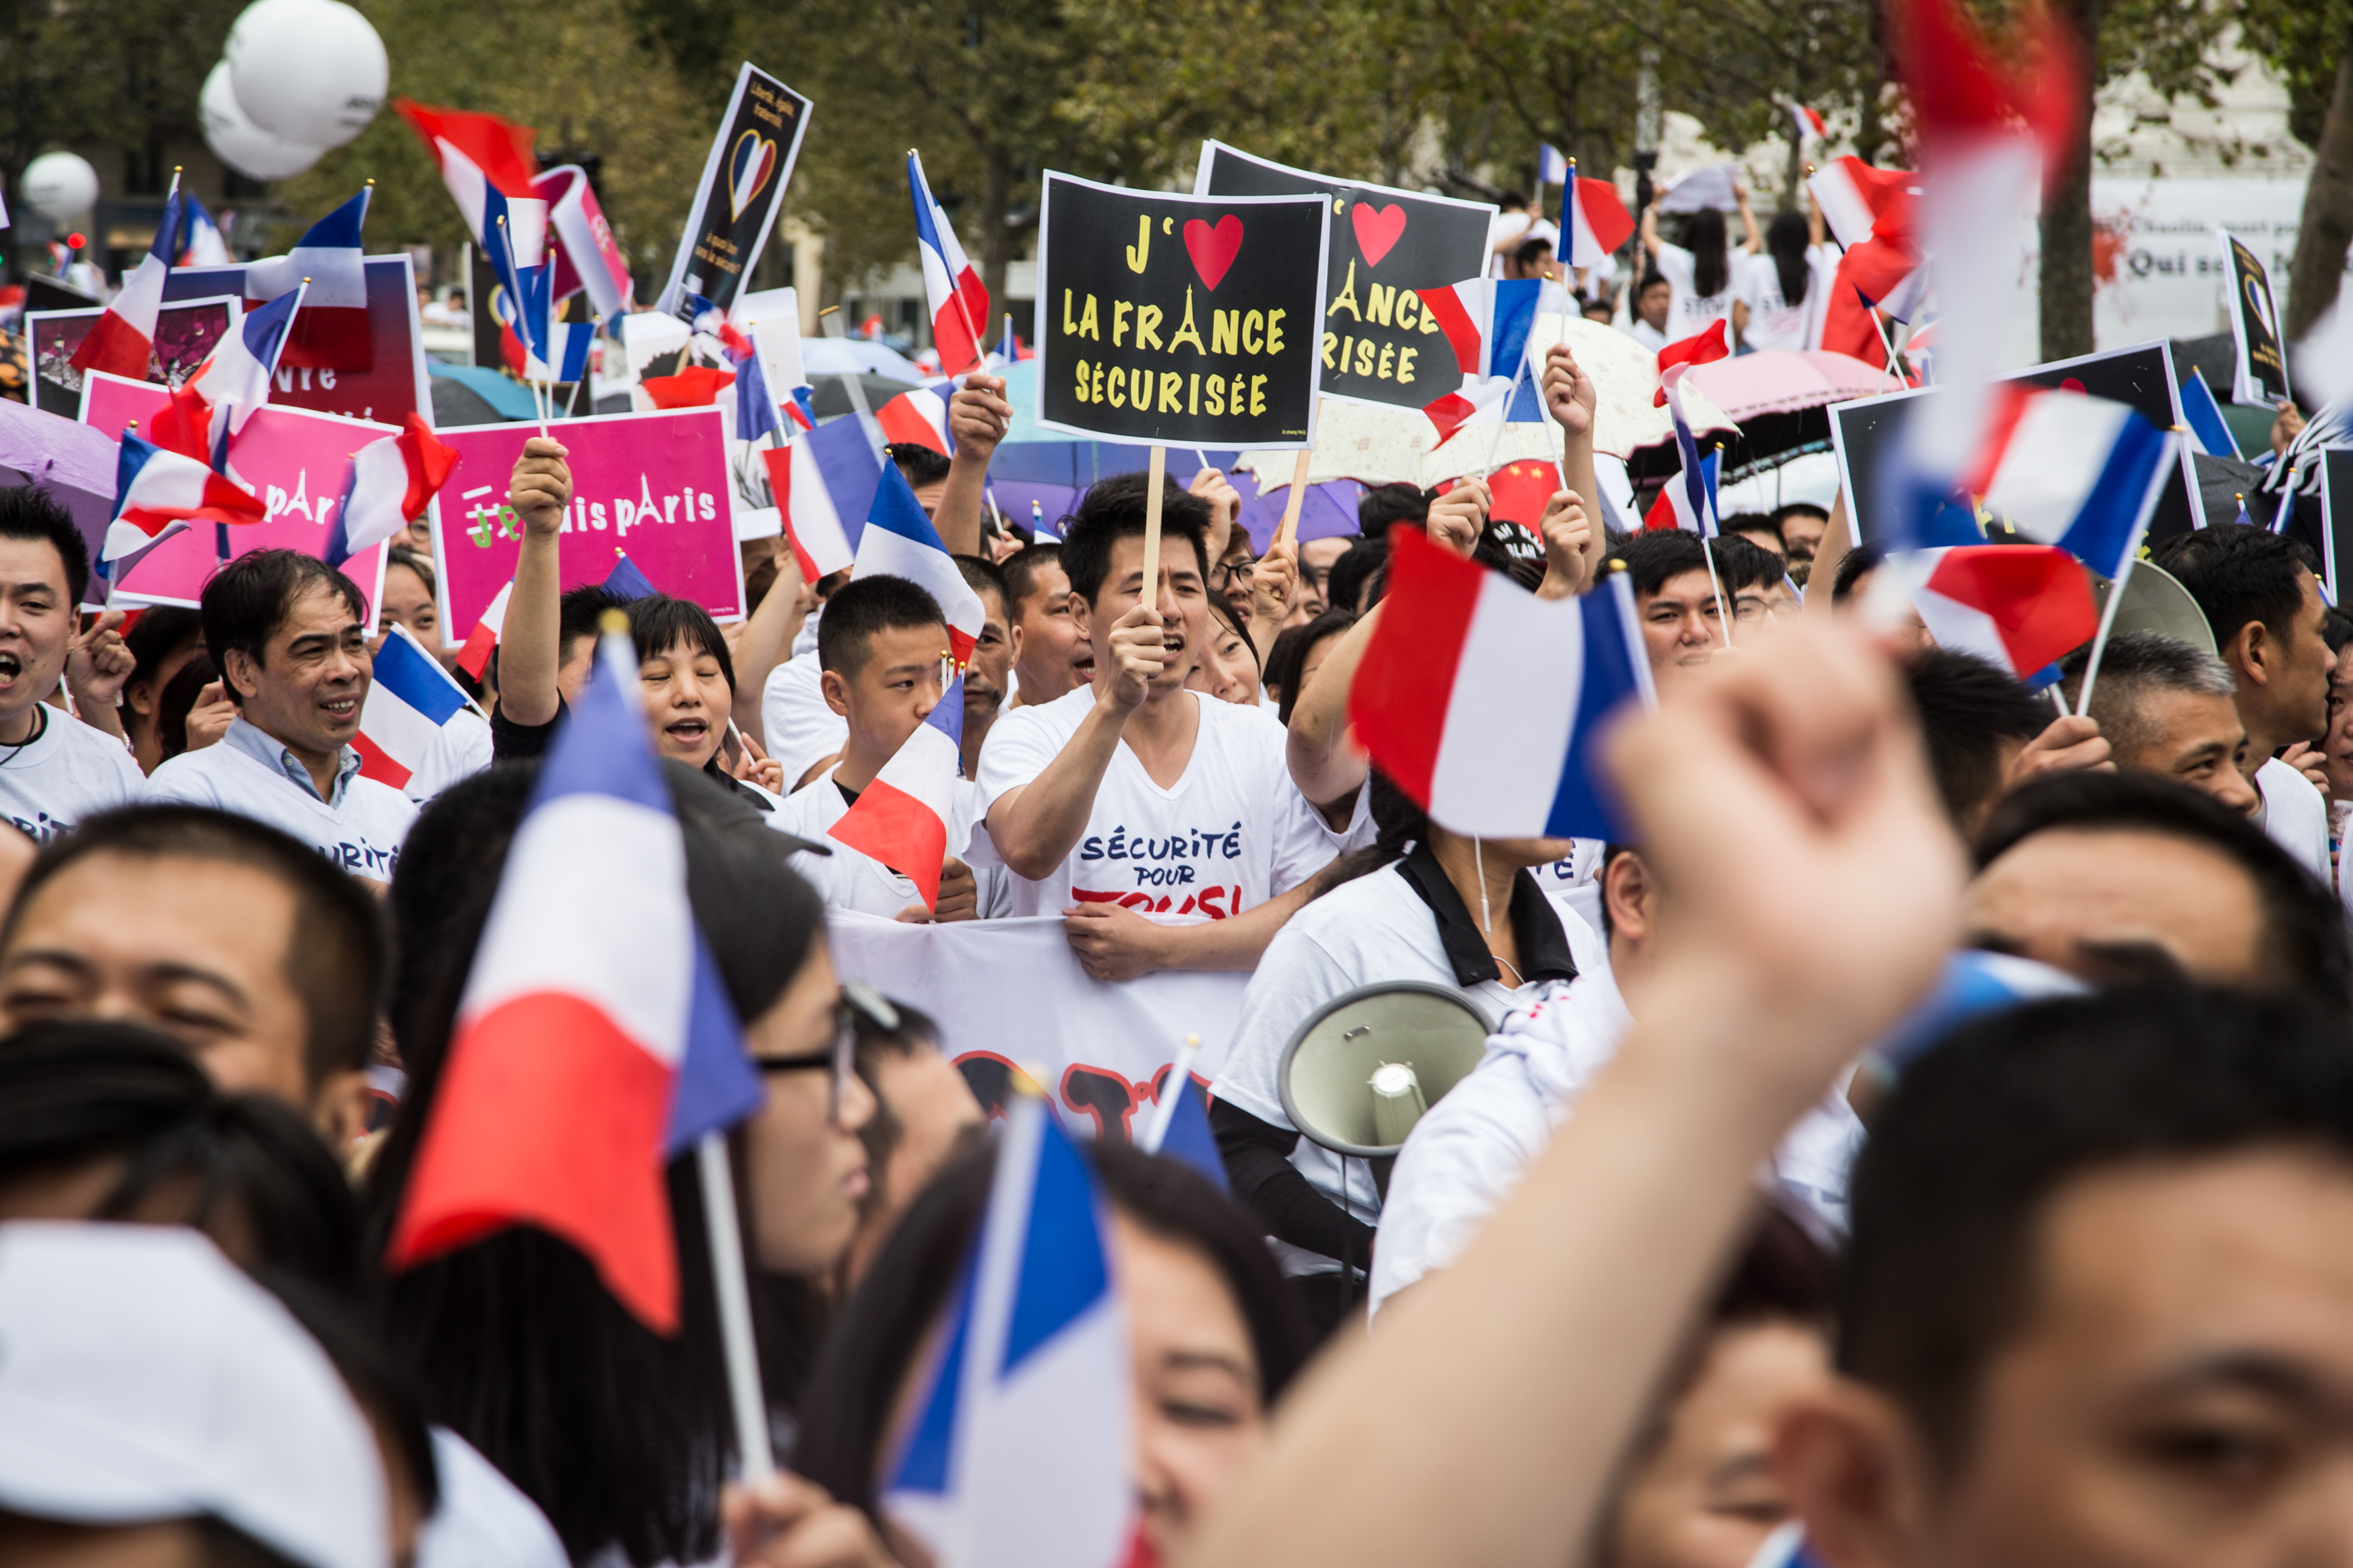 Manifestation "Sécurité pour tous" organisée par 60 associations des chinois de France, place de la République. La communauté chinoise dénonce le climat d'insécurité persistant qu'elle subie.